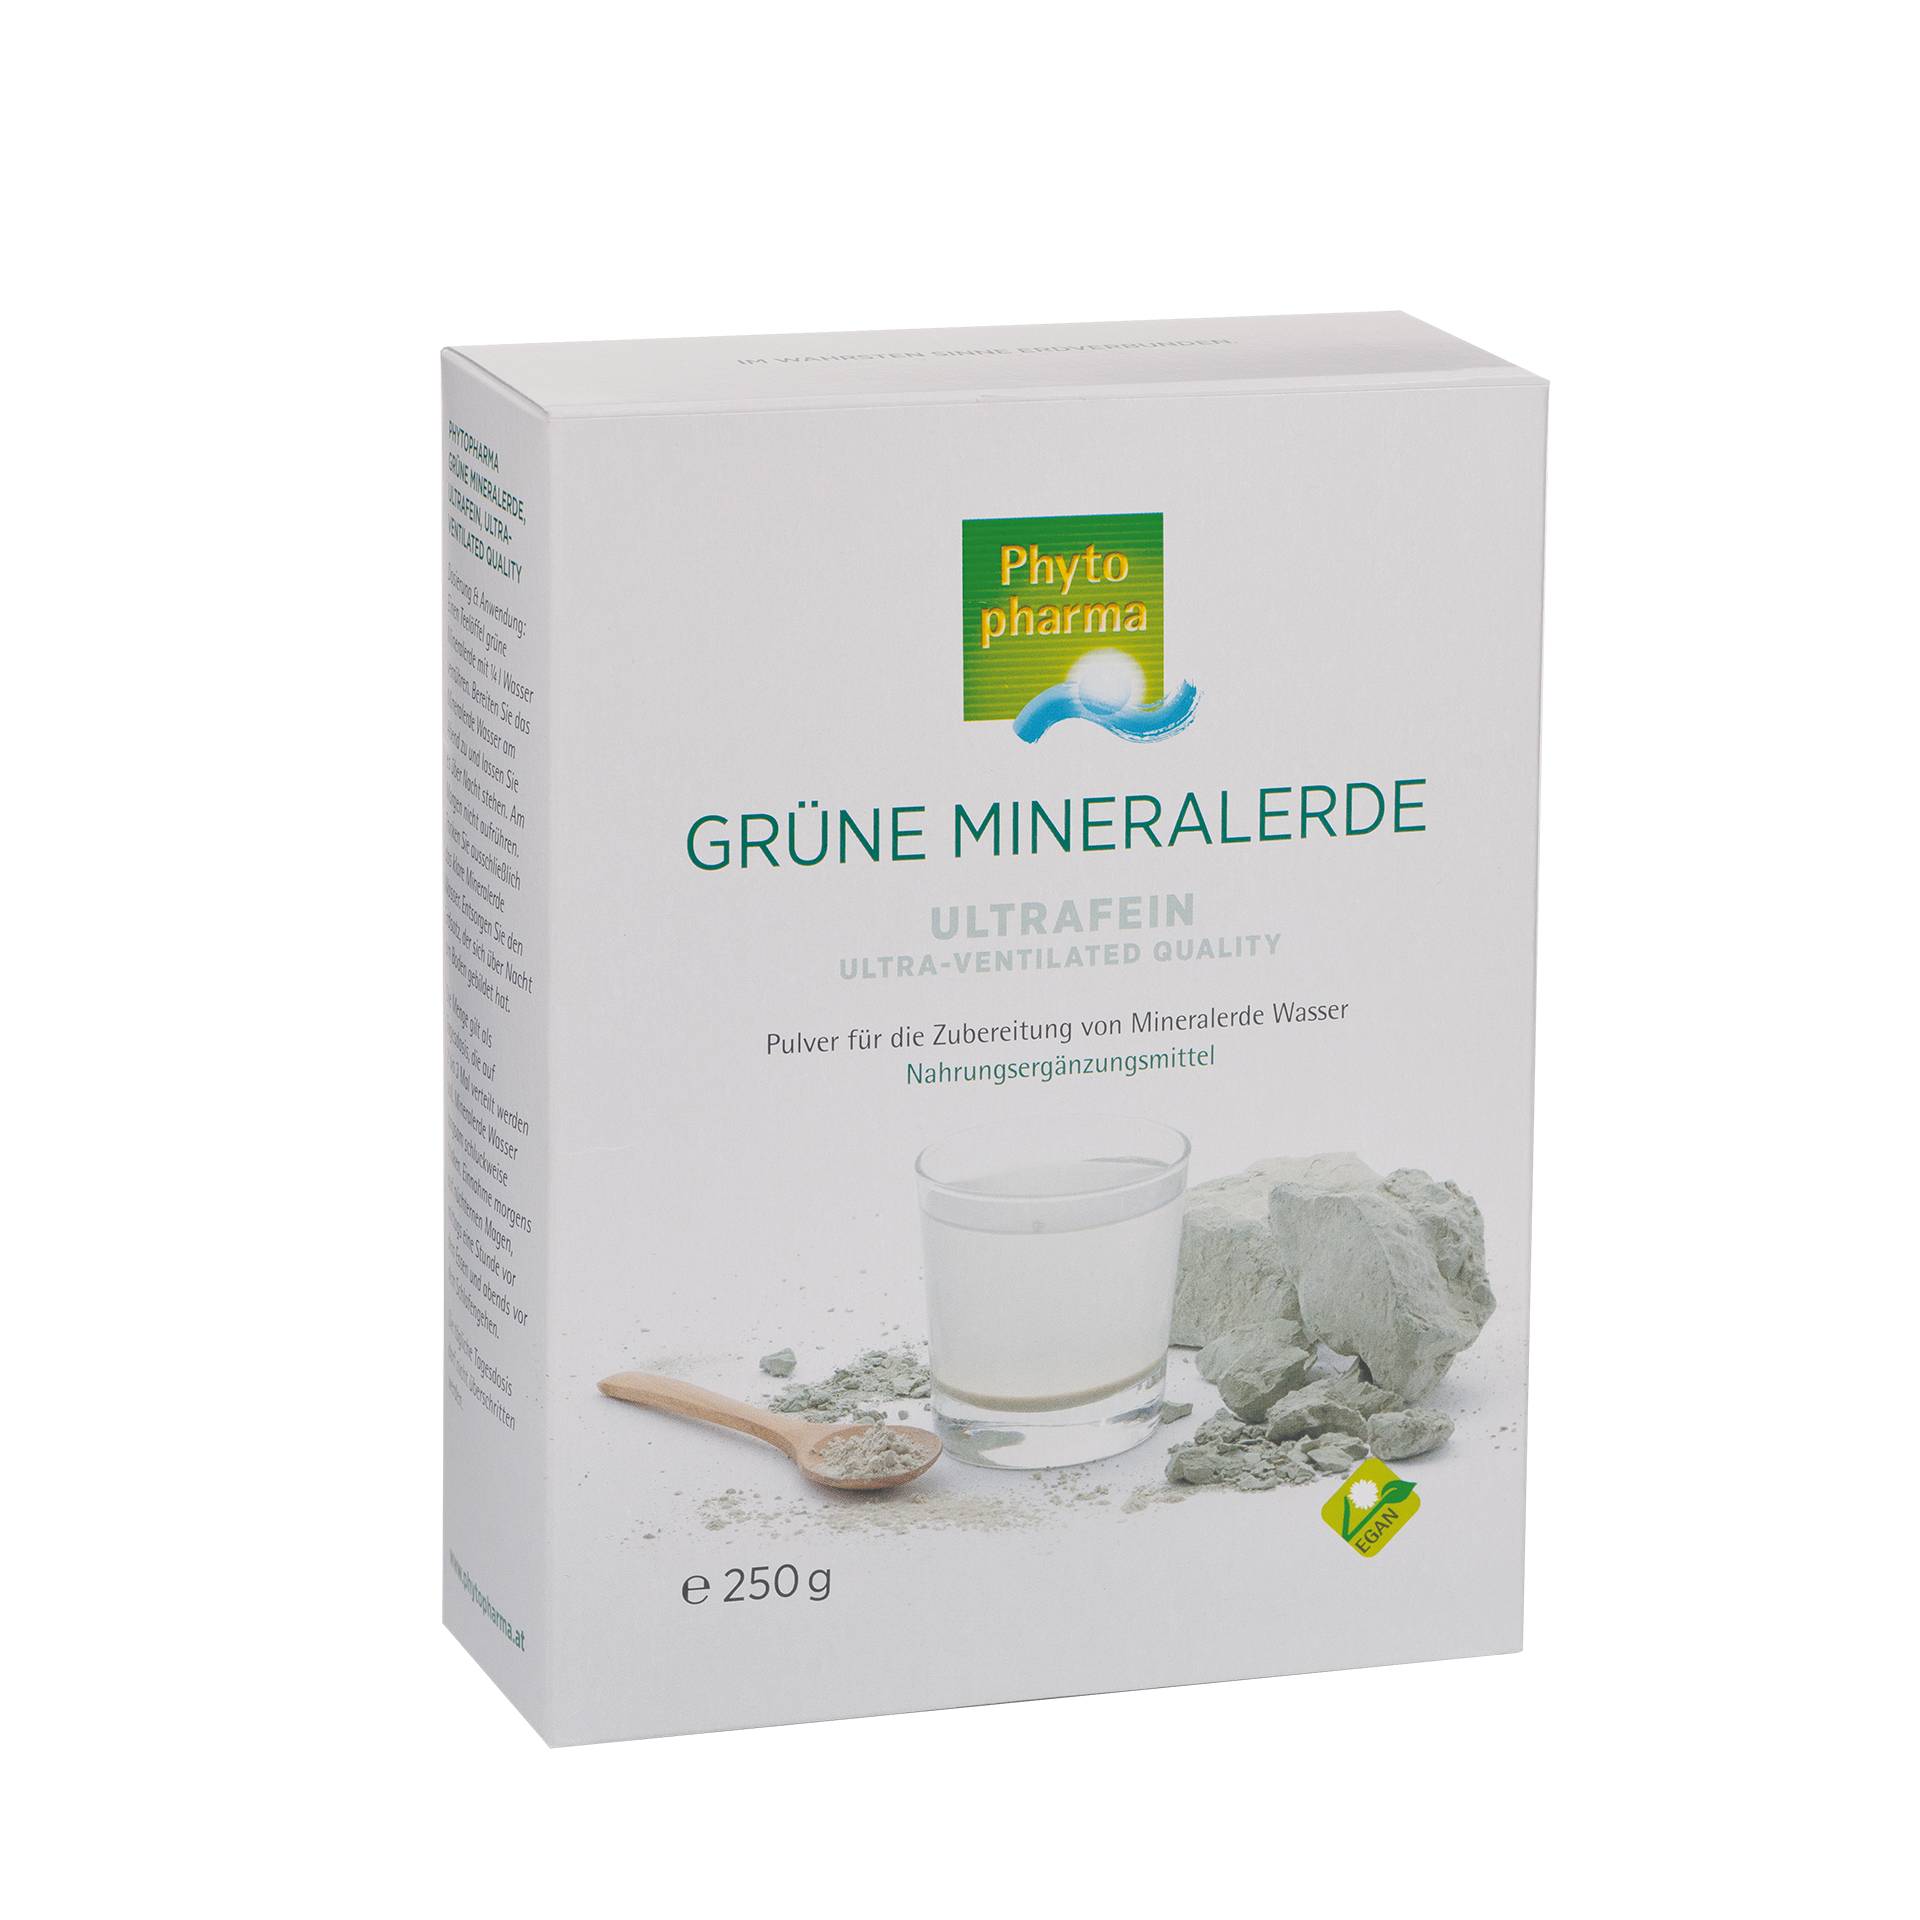 Grüne Mineralerde 250 g -Ultrafeines Pulver für die Zubereitung von Mineralerde Wasser -  vegan - Phyto Pharma von Phyto Pharma